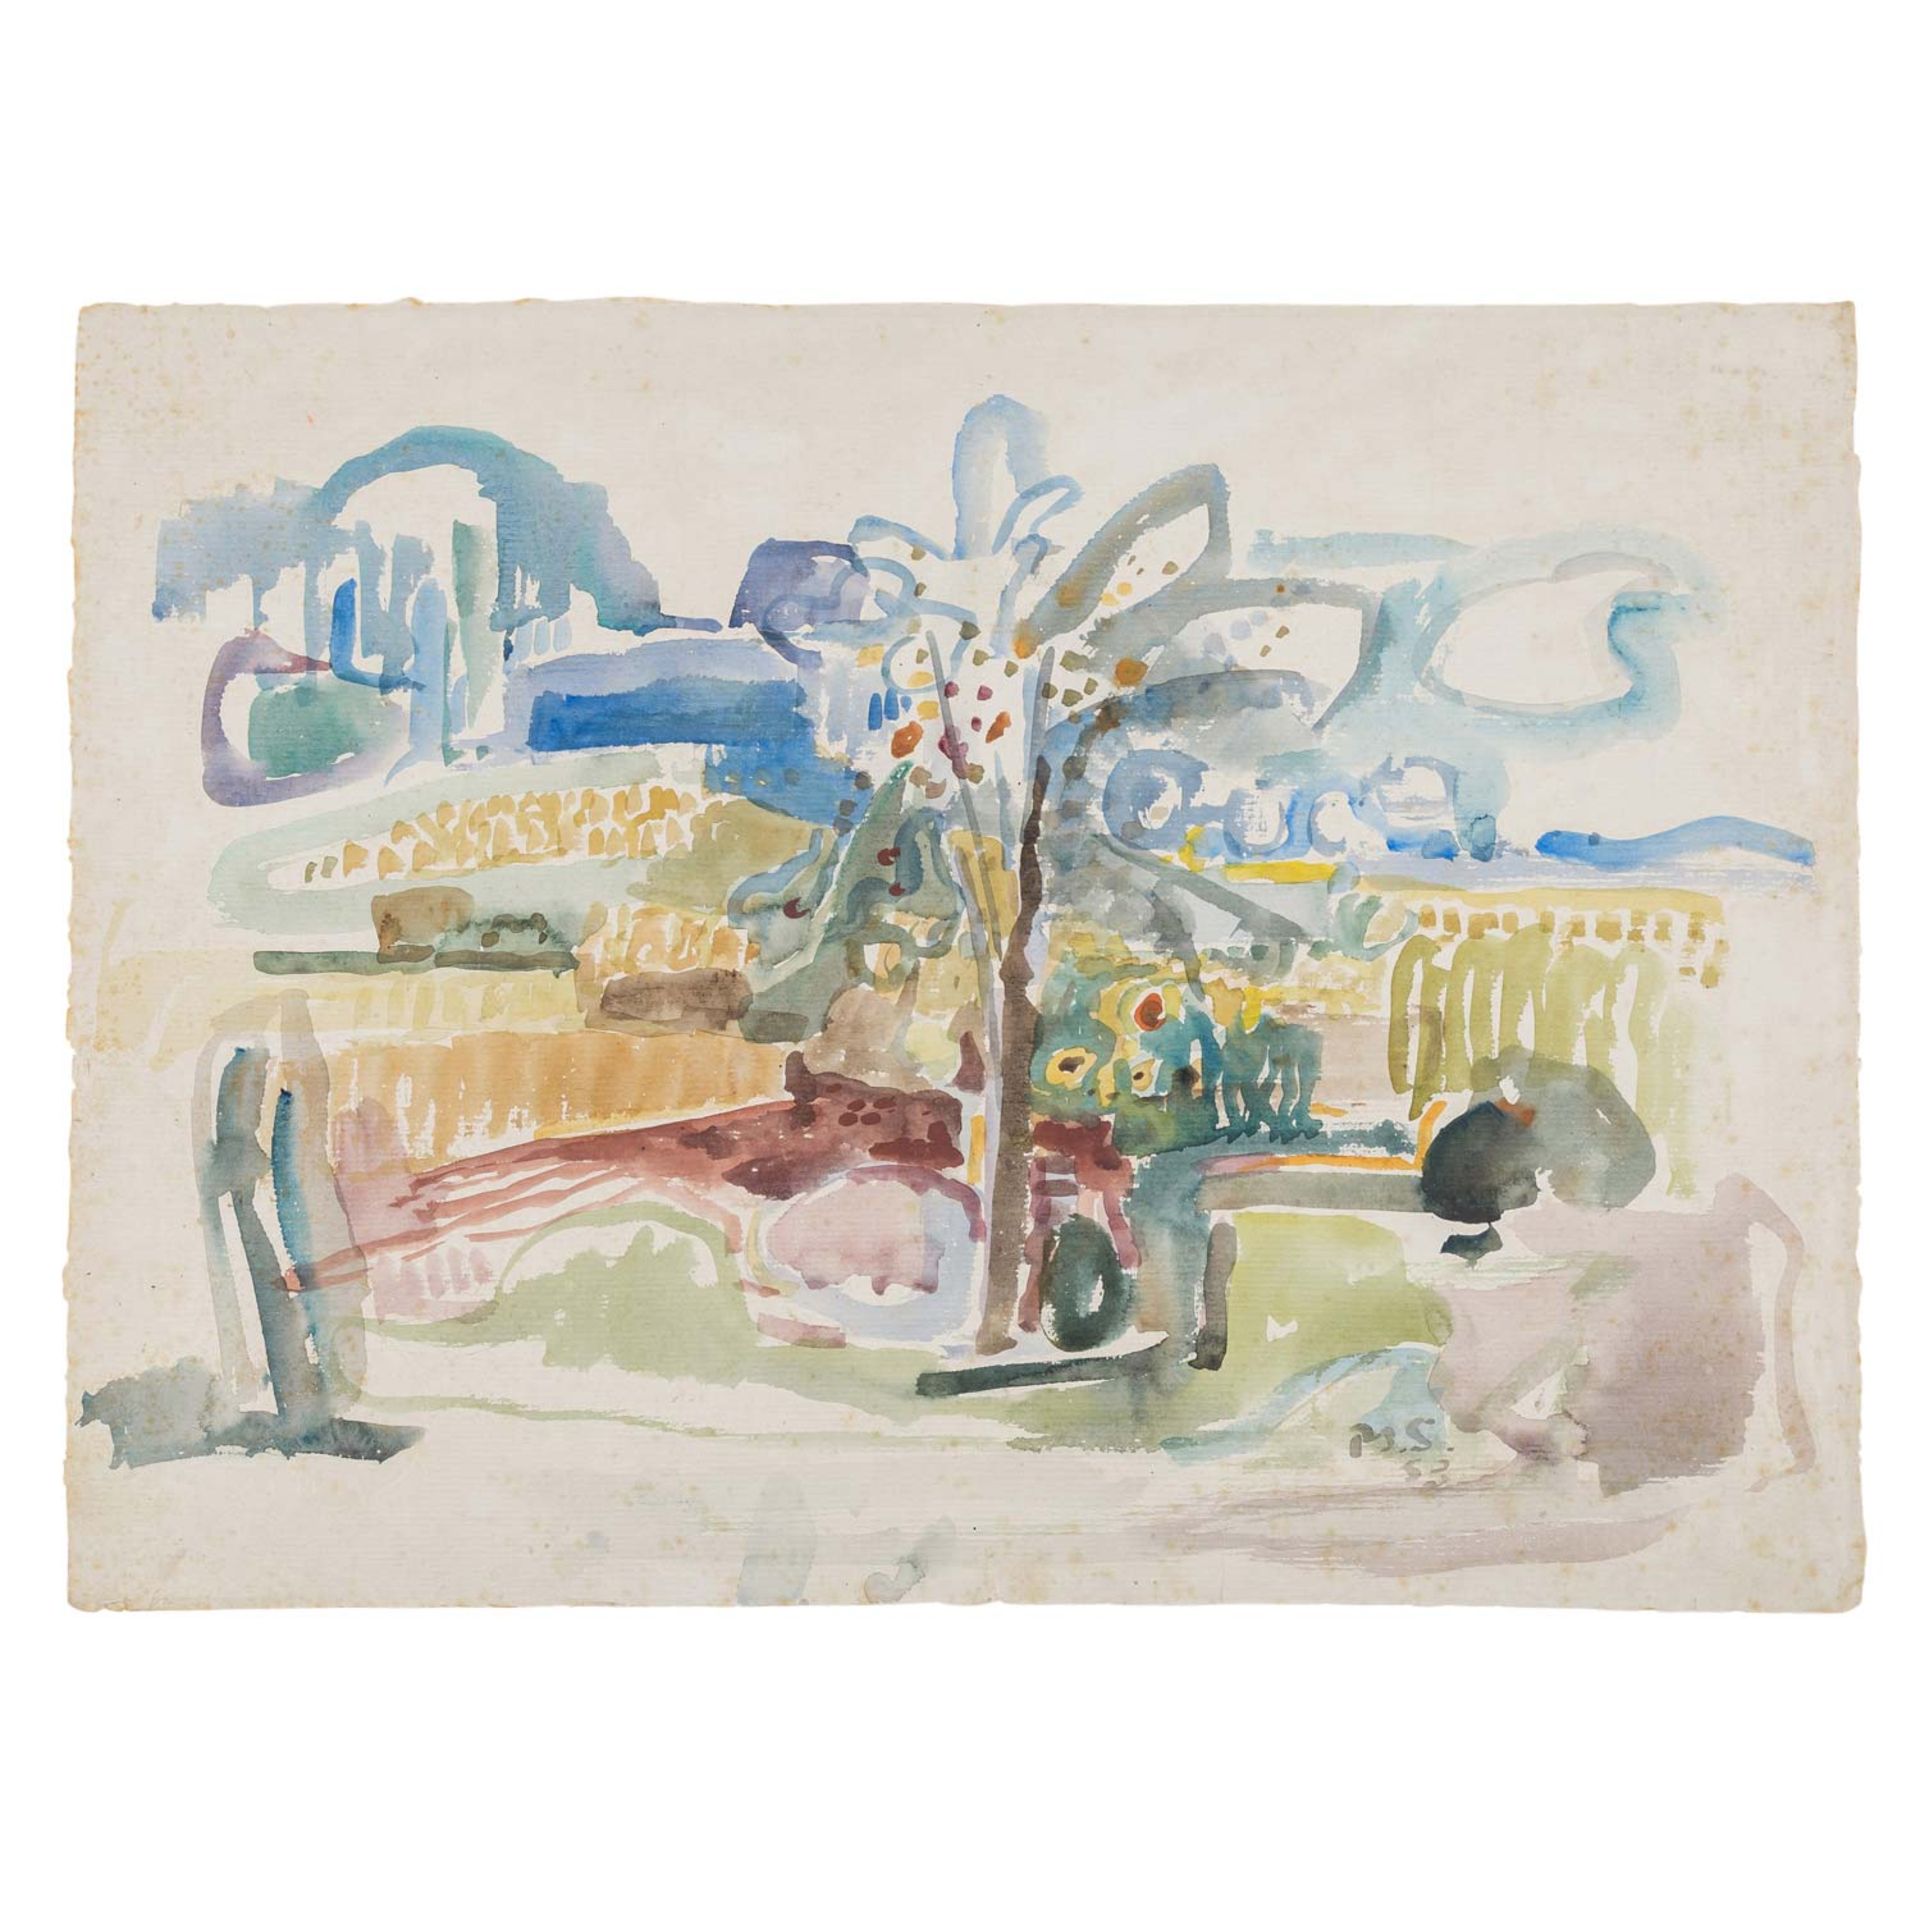 SCHOBER, PETER JAKOB (1897-1983), "Landschaft",u.re. monogrammiert u. dat. (19)53, Aquarell/